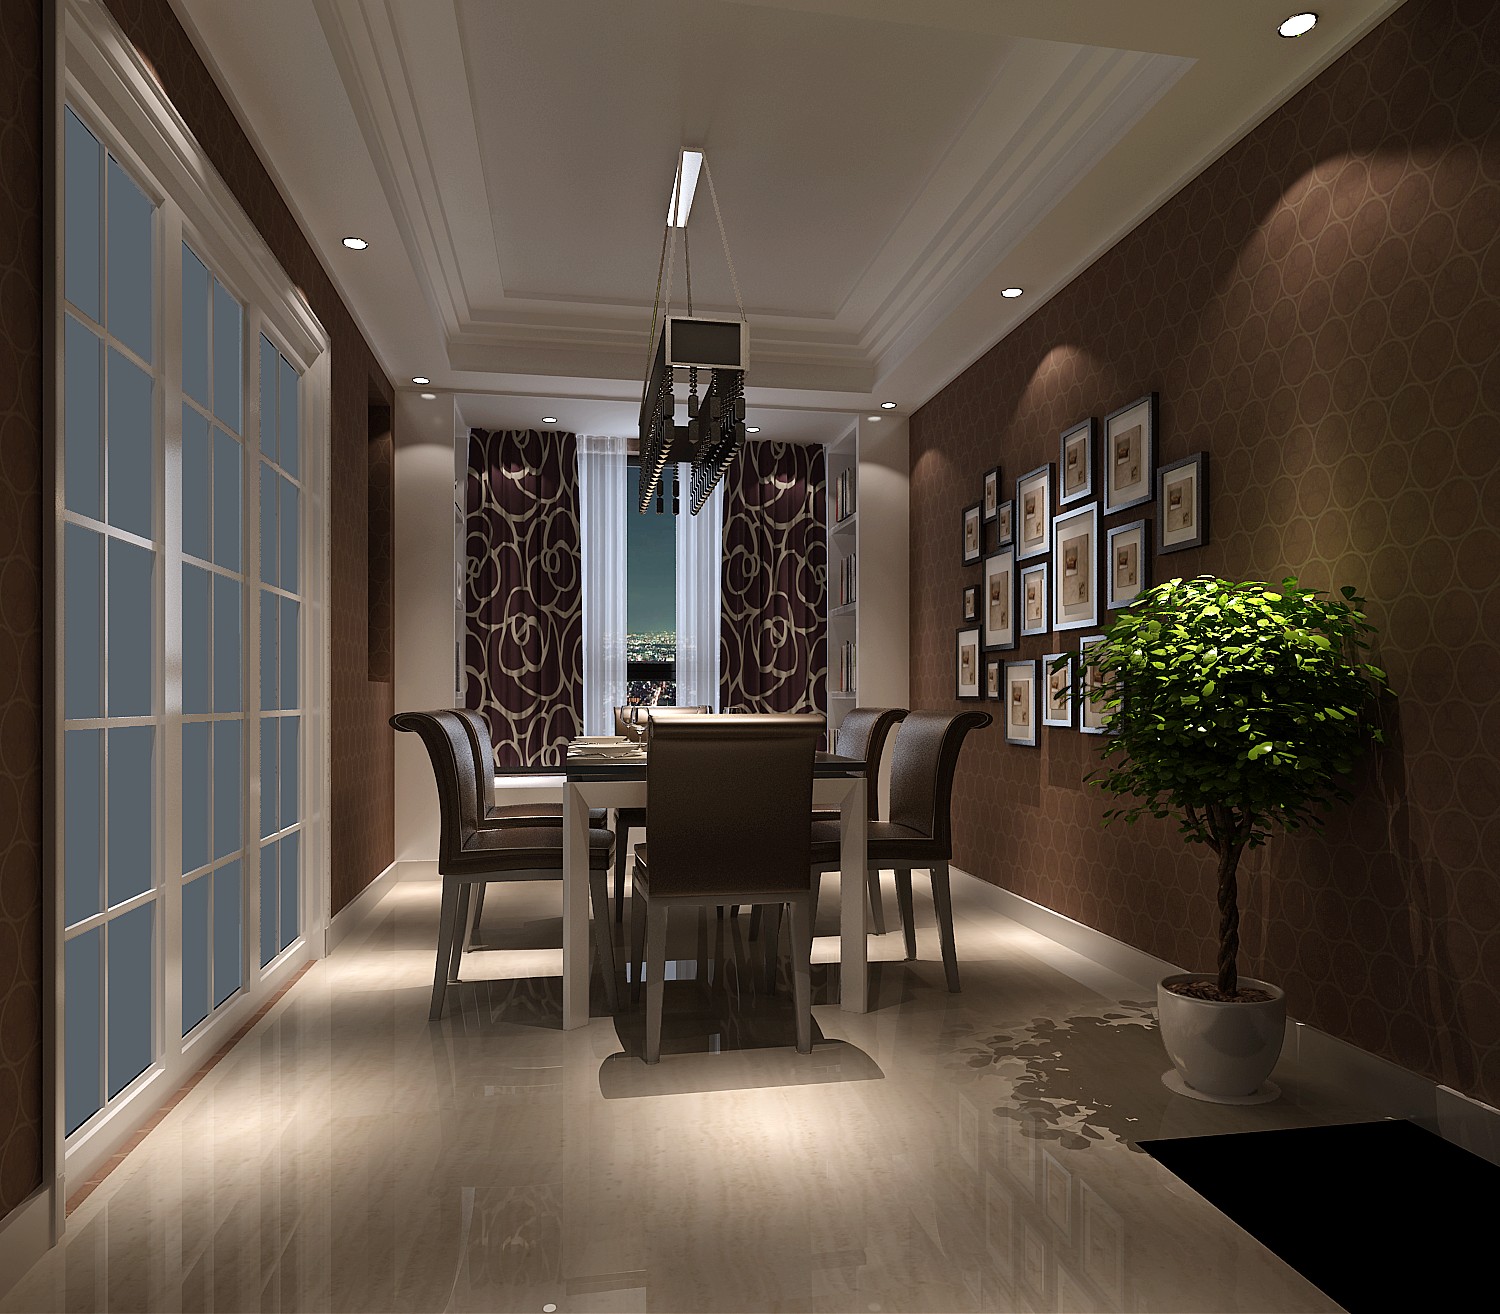 三居 简约 精致 个性 独特 完美 格调 舒适 实用 餐厅图片来自重庆高度国际装饰工程有限公司在金隅翡丽-简约风格的分享